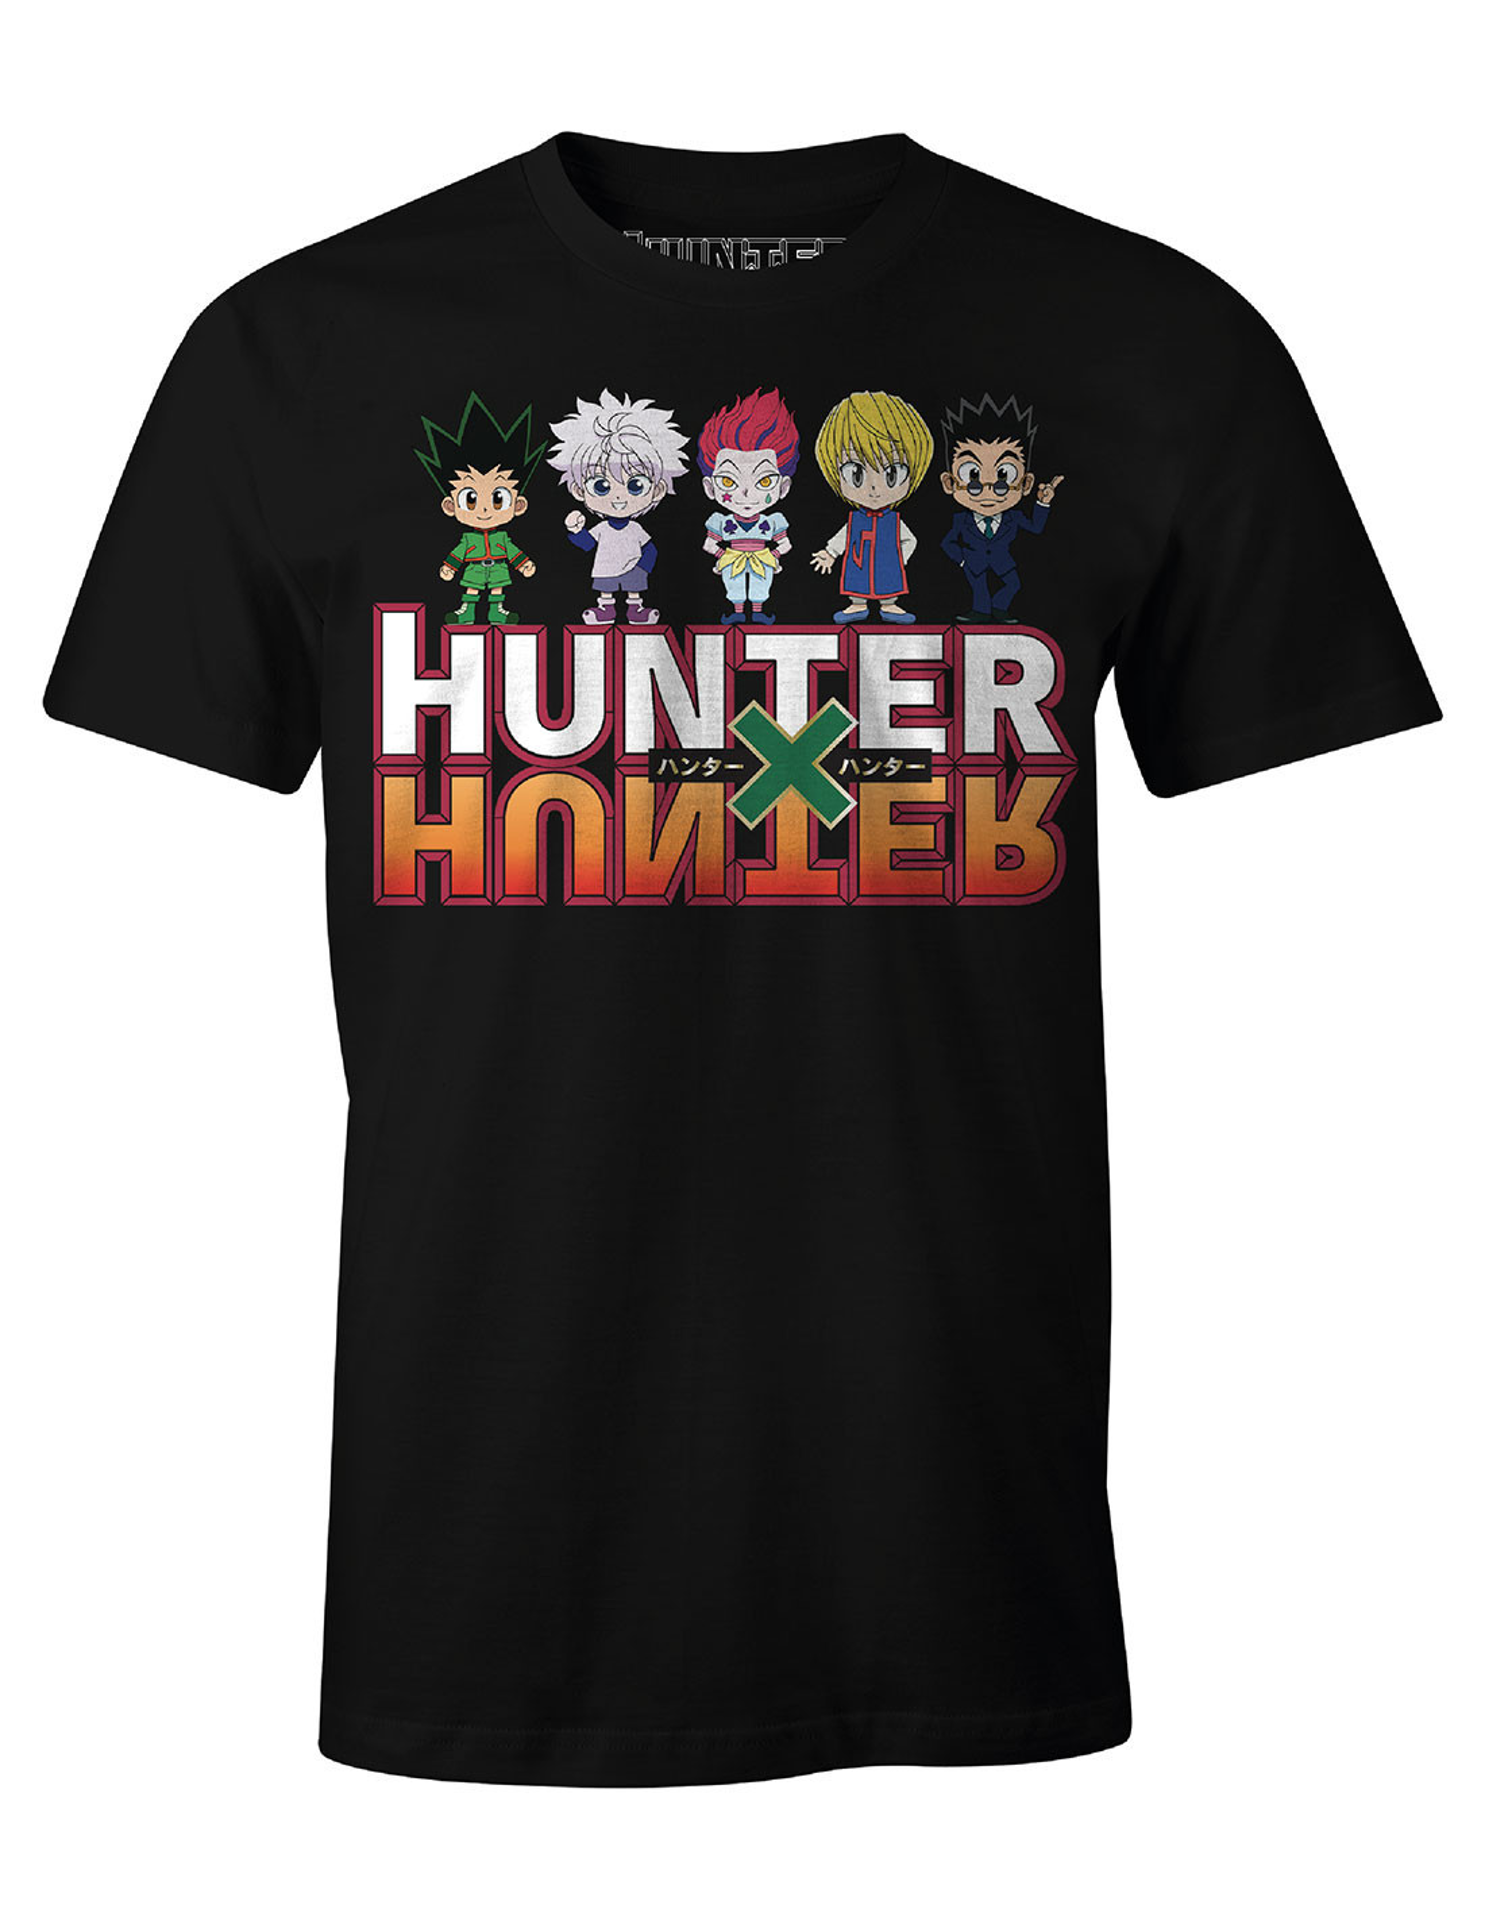 Hunter X Hunter - T-shirt Noir Équipe de Hunter - S